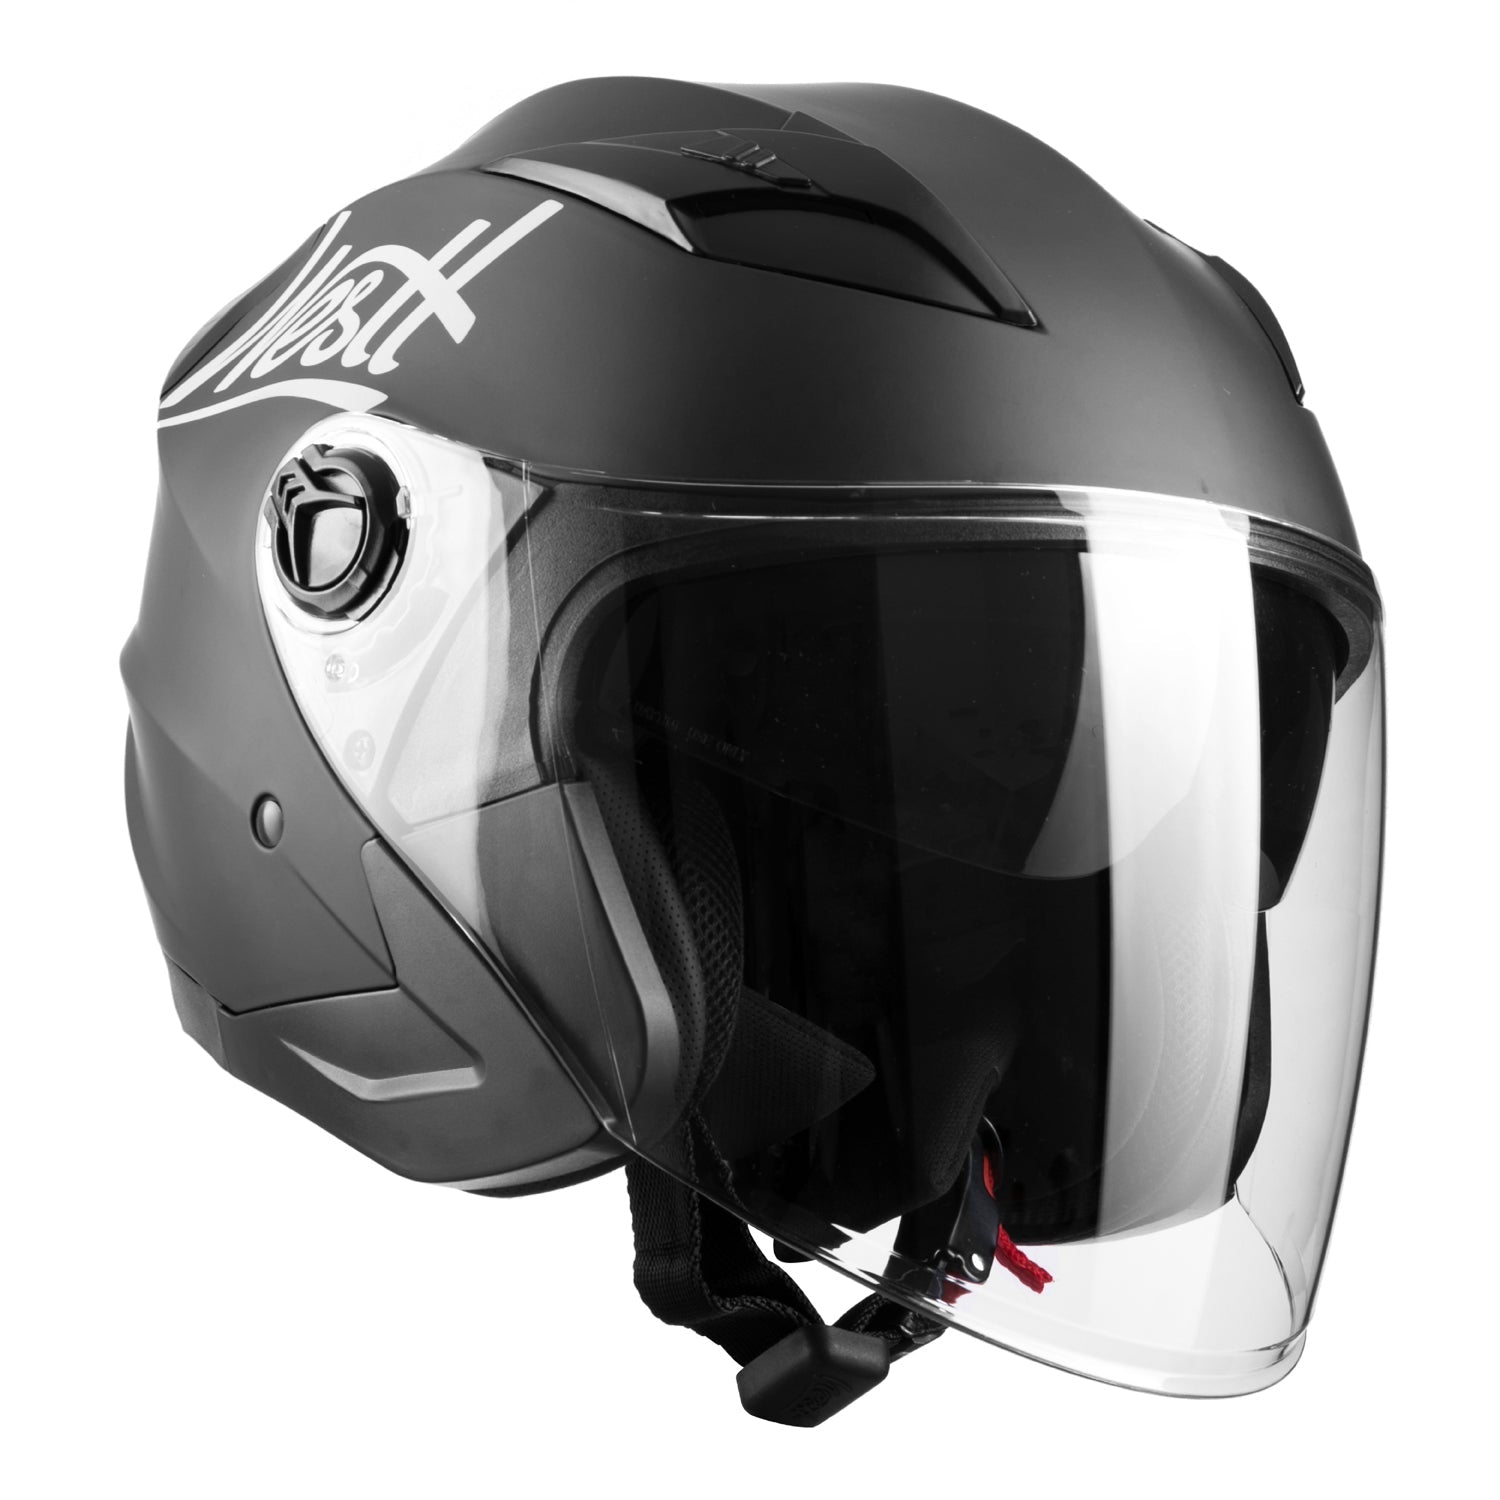 Best Selling Motorcycle Helmets